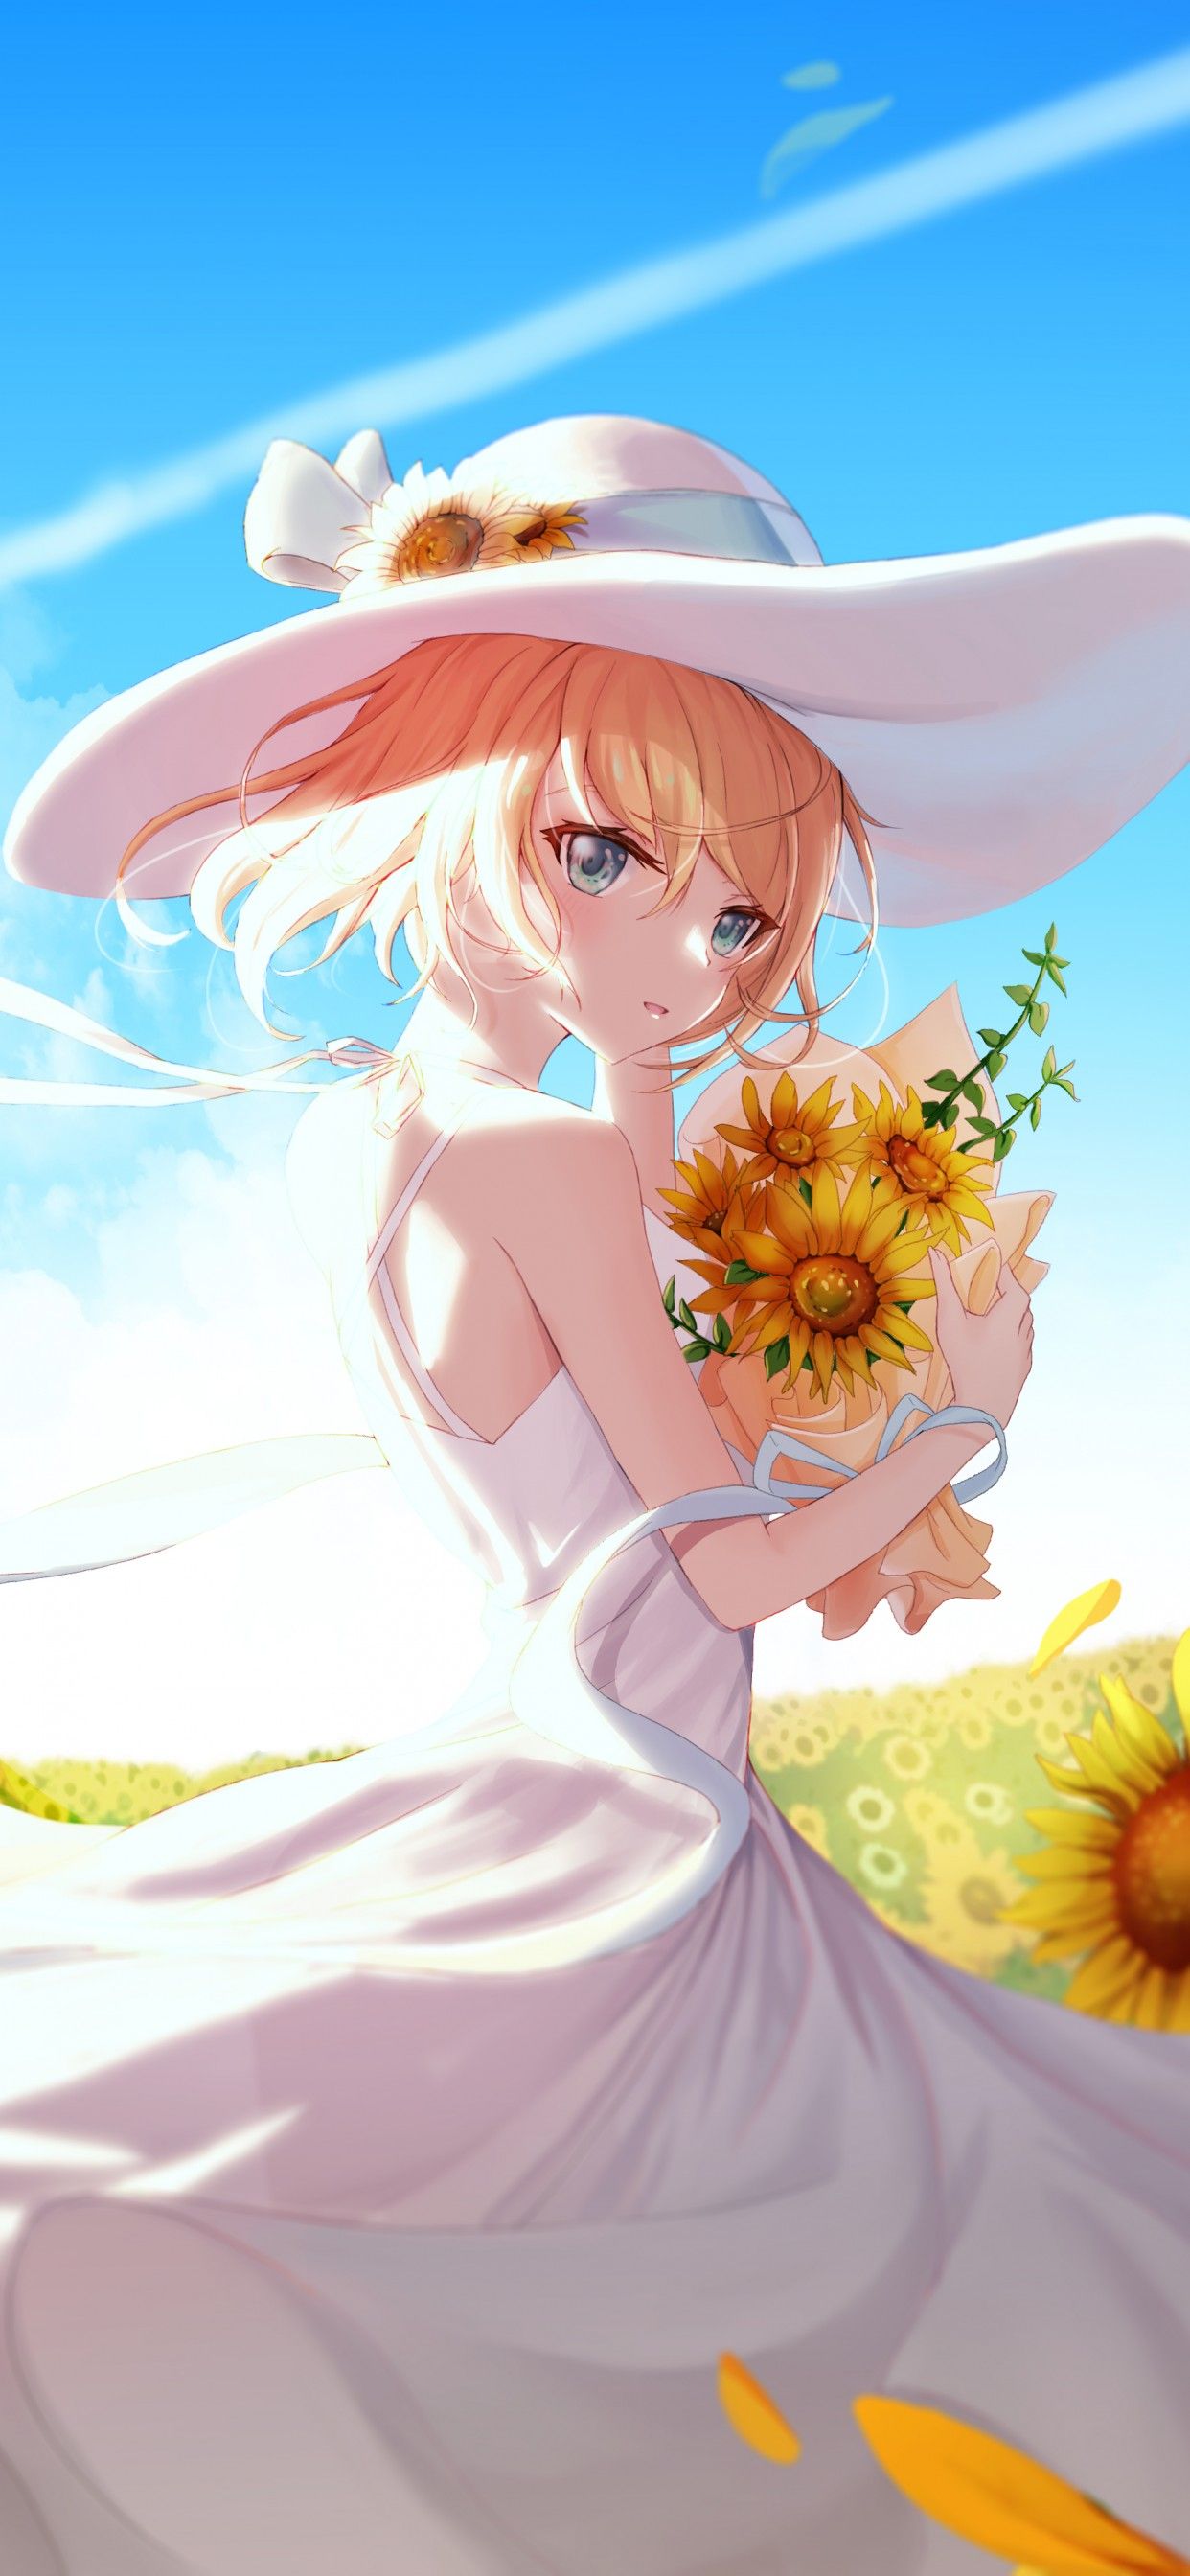 Anime girl 4K Wallpaper, Sunflowers, Sunny day, 5K, Fantasy,